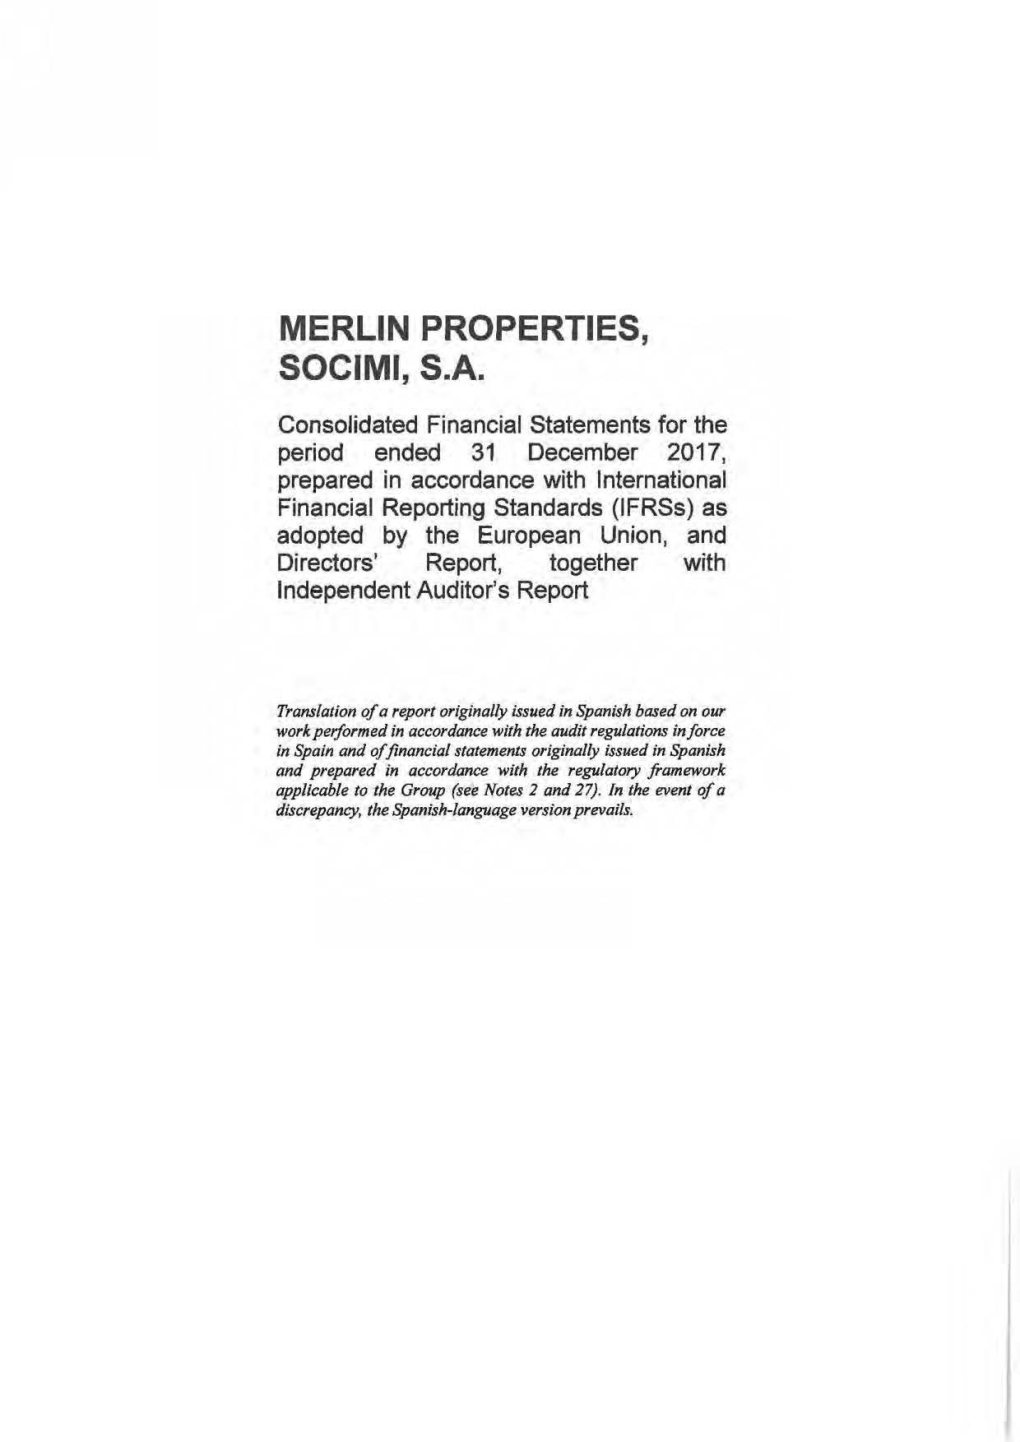 Merlin Properties, Socimi, S.A